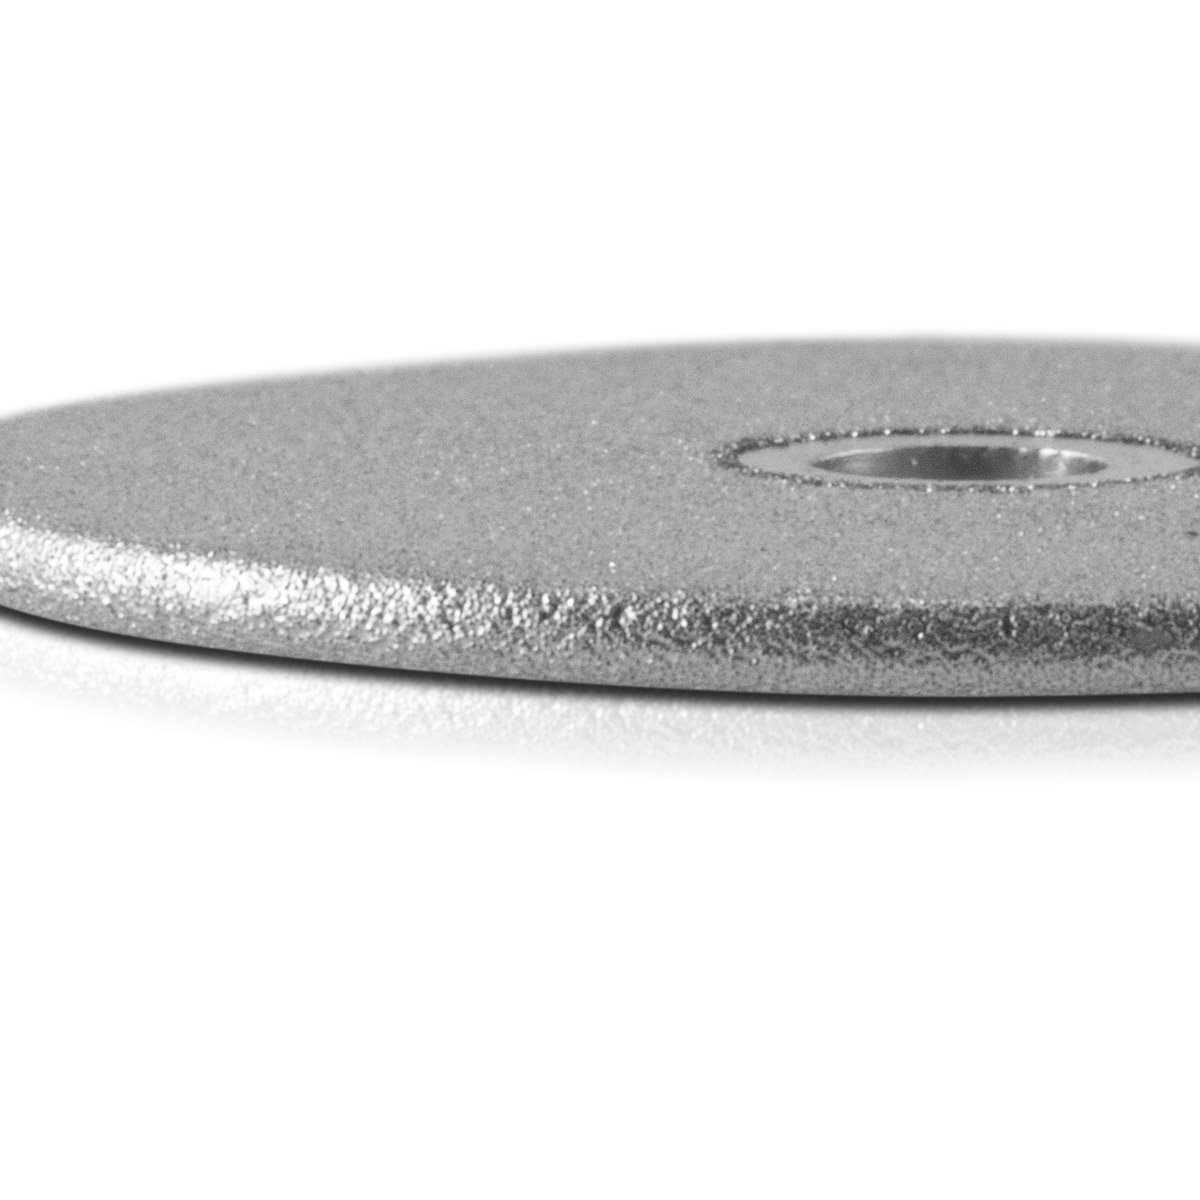 mm ST ATG-20 Schleifscheibe Durchmesser ATG-20 mm für Werkzeugaufnahme Diamant-Schleifscheibe Wolframschleifer zu Diamant-Schleifscheiben passend St), für 5 (1 36,8 Wolfram-Schleifgerät STAHLWERK ST, mit